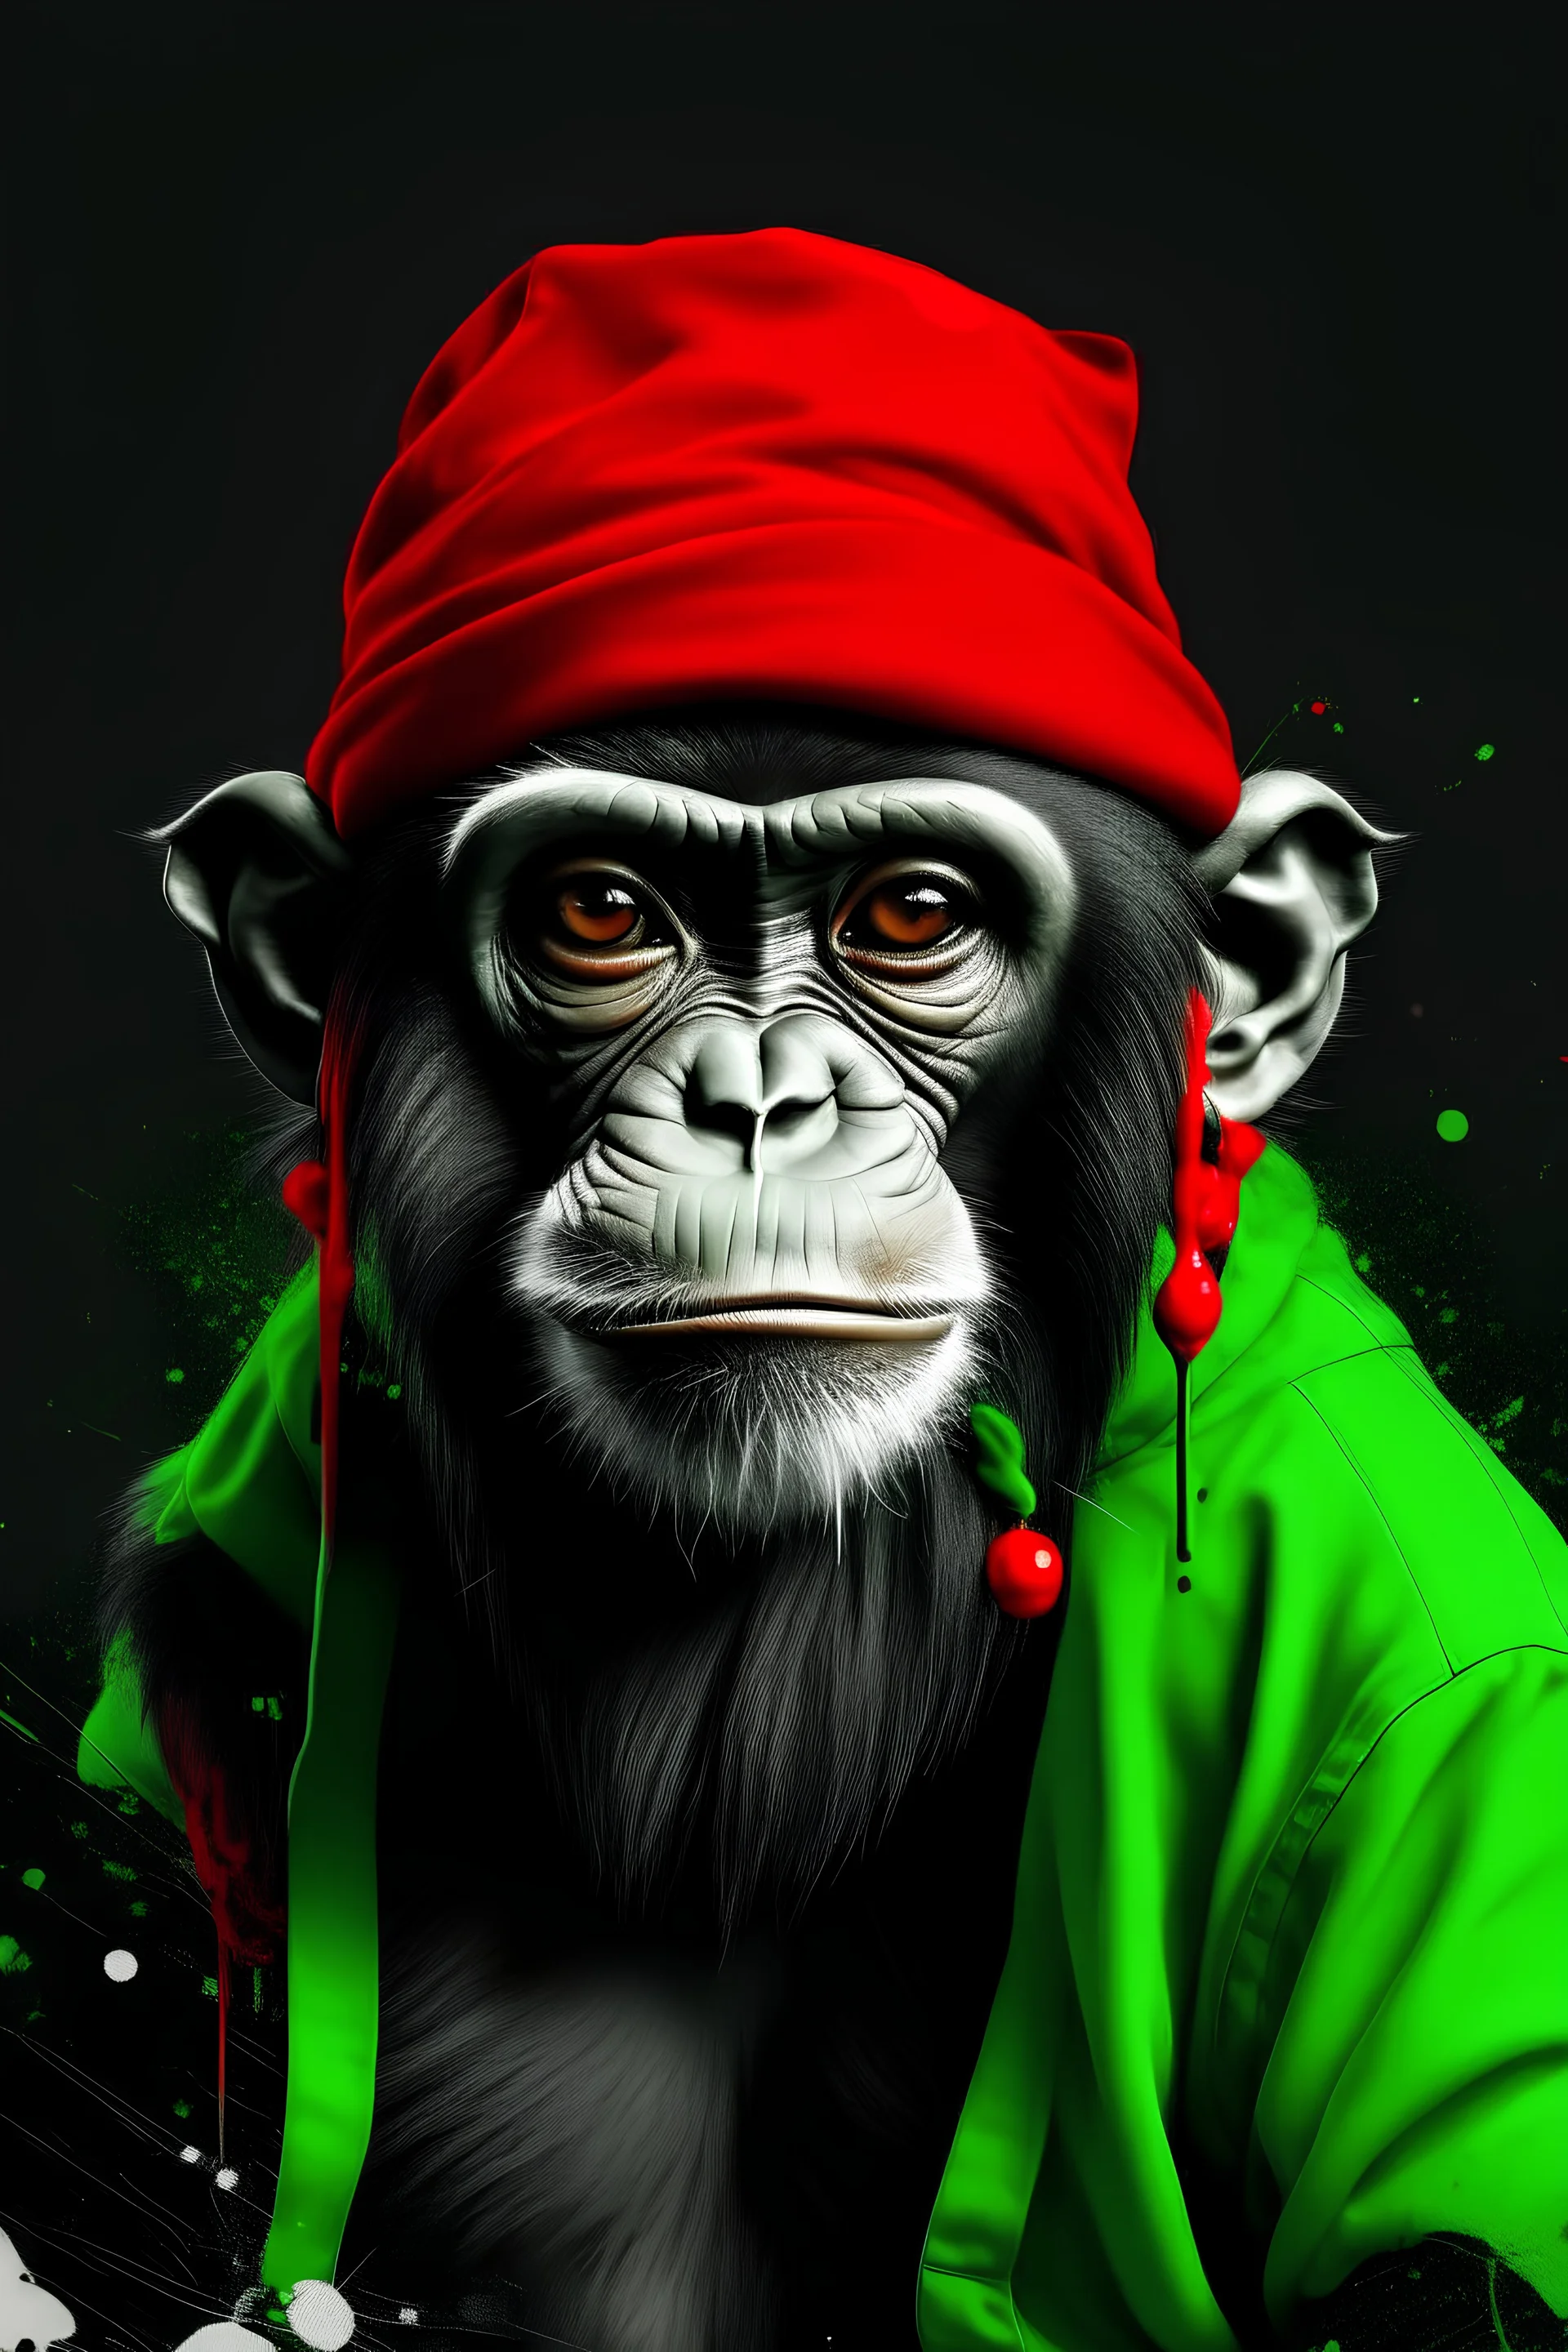 لوحة فنية الكترونية لقرد يرتدي تيشرت ابيض و اسود ويرتدي نضارة حمراء وقبعة خضراء